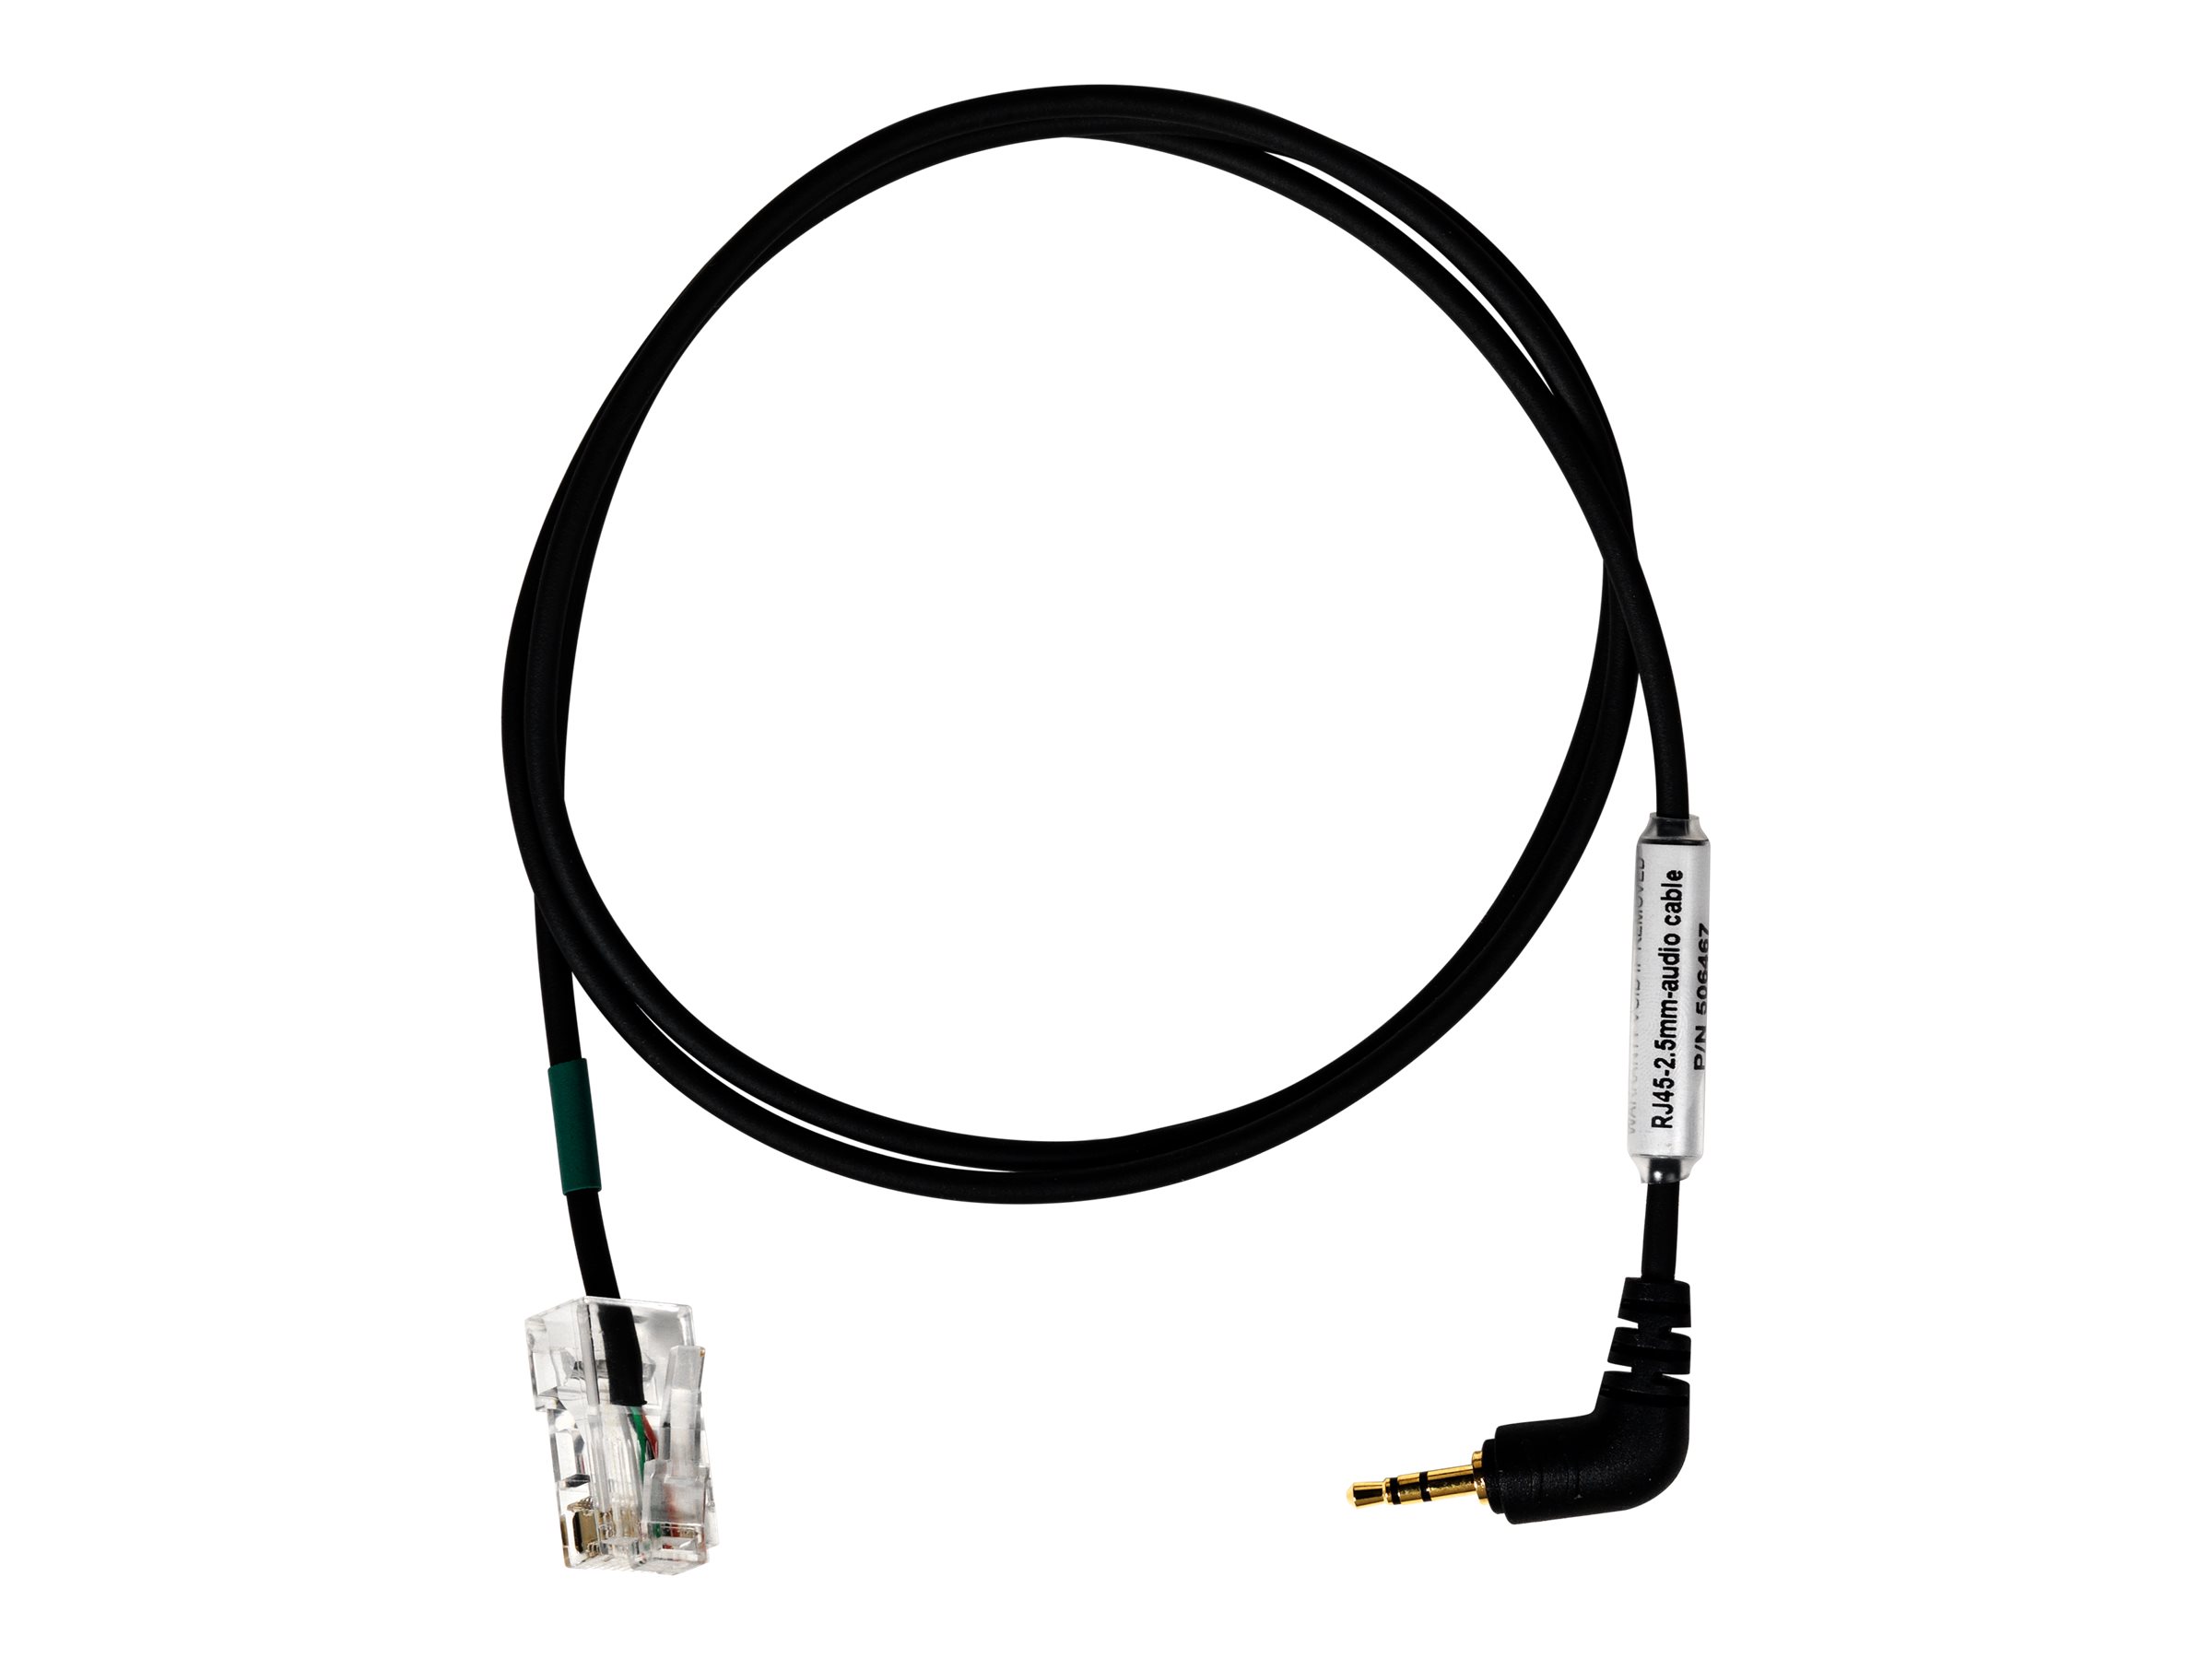 EPOS | SENNHEISER - Câble pour casque micro - jack micro mâle pour RJ-45 mâle - pour IMPACT D 10; IMPACT SDW 50XX; EPOS I SENNHEISER D 10 - 1000713 - Accessoires pour systèmes audio domestiques